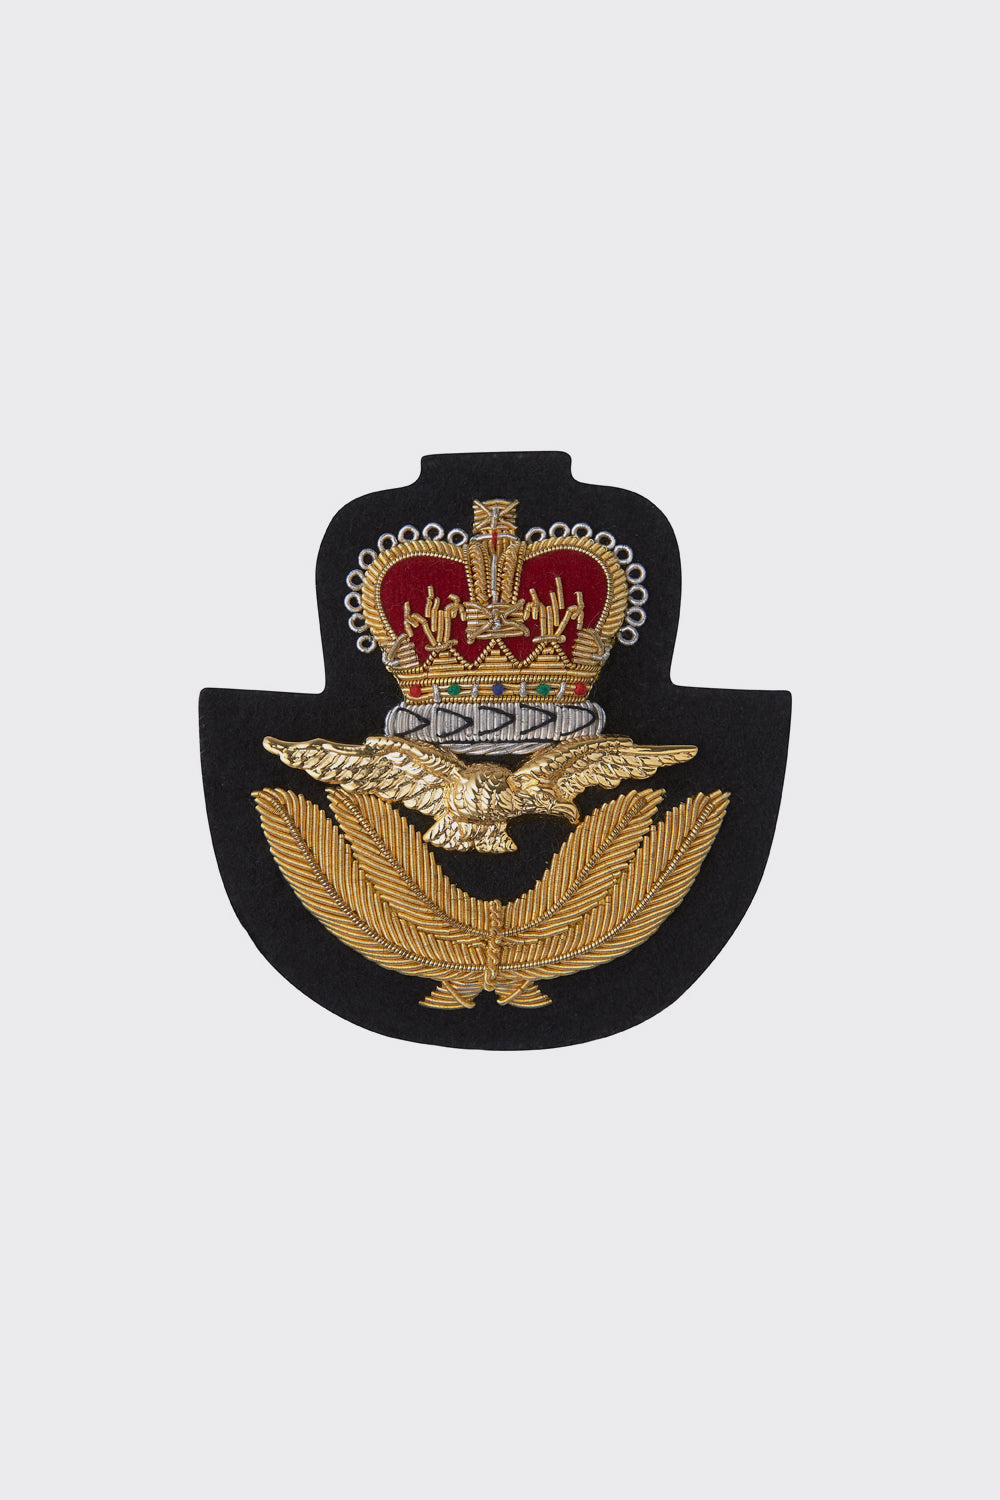 RAF Officers St Edwards Crown Beret Badge